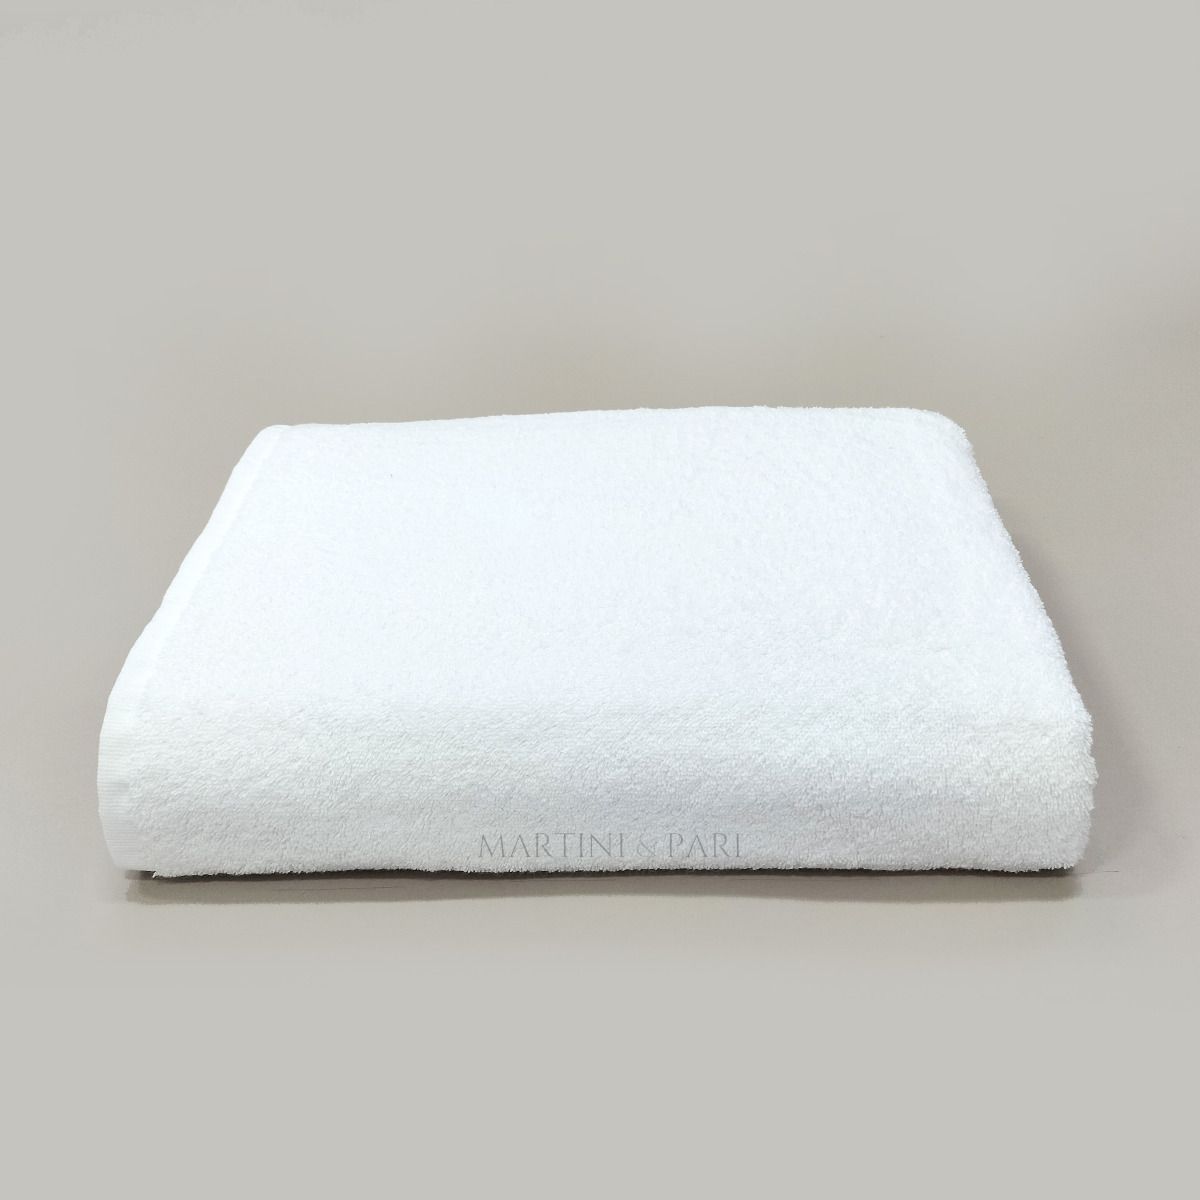 asciugamani grandi 90 x 190 cm blu reale, 2 Set di teli da bagno extra large 550 g/m² super morbidi e assorbenti ad asciugatura rapida 